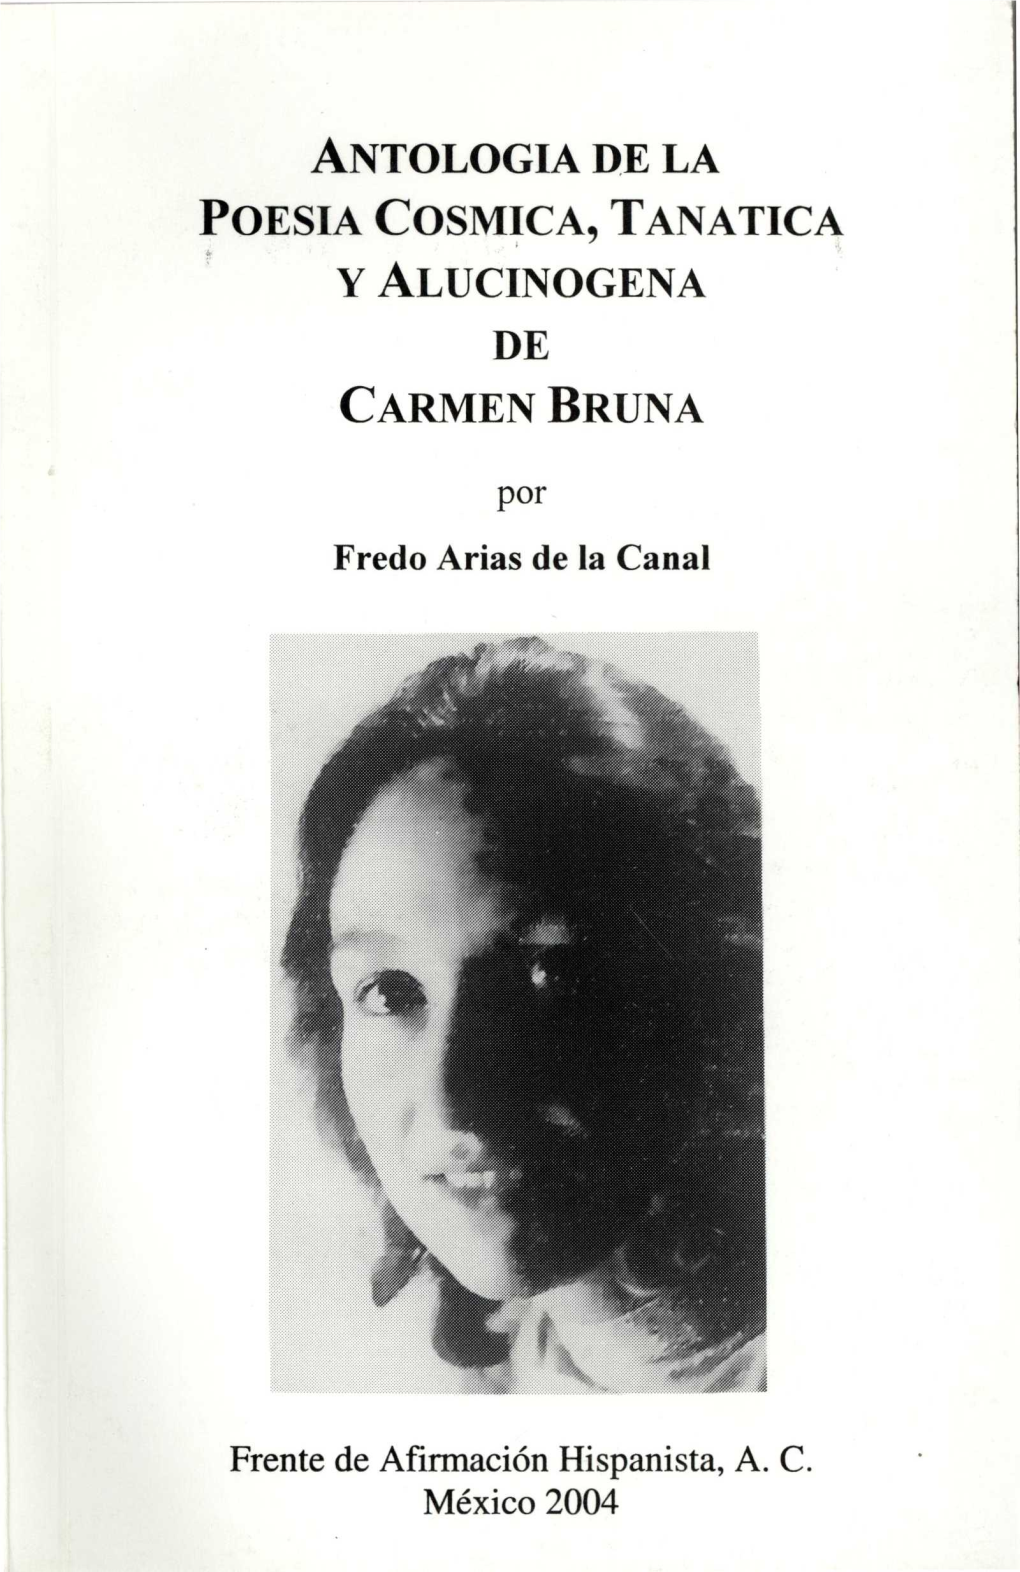 Antologia De La Poesia Cosmica, Tanatica Y Alucinogena De Carmen Bruna